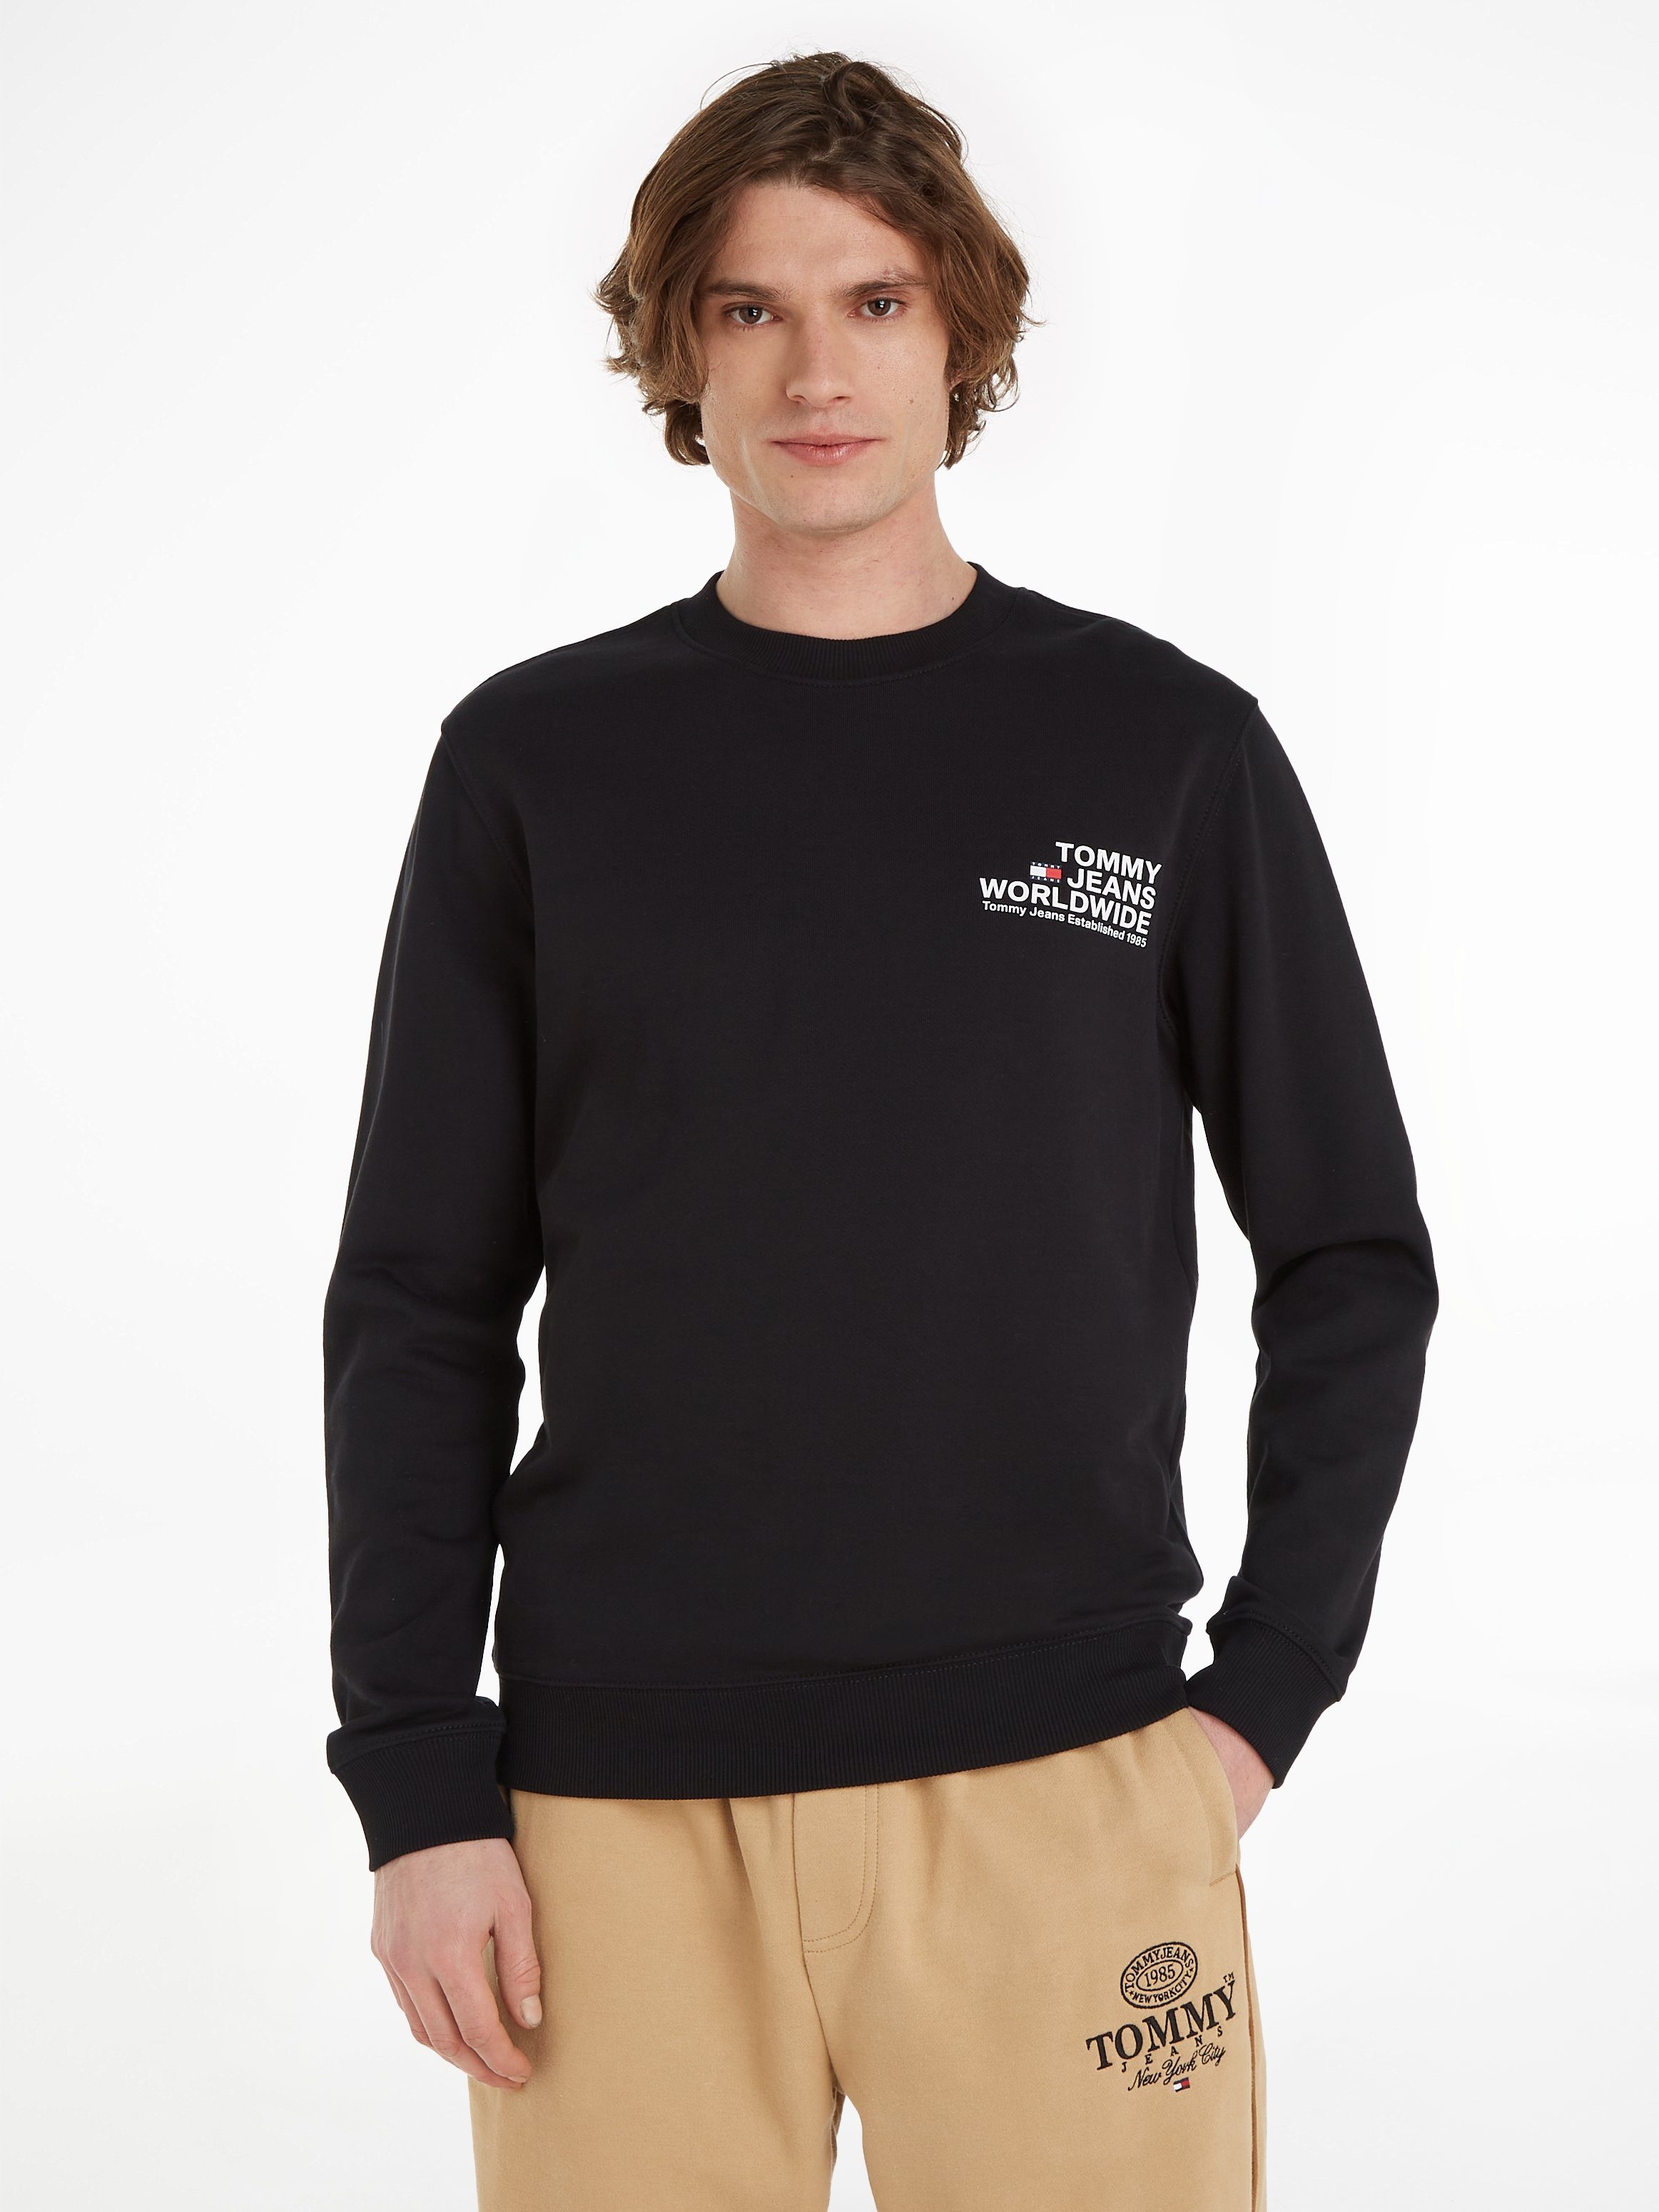 Tommy Jeans Sweatshirt TJM ENTRY Sweatware REG GRAPHIC aus reiner CREW, Baumwolle